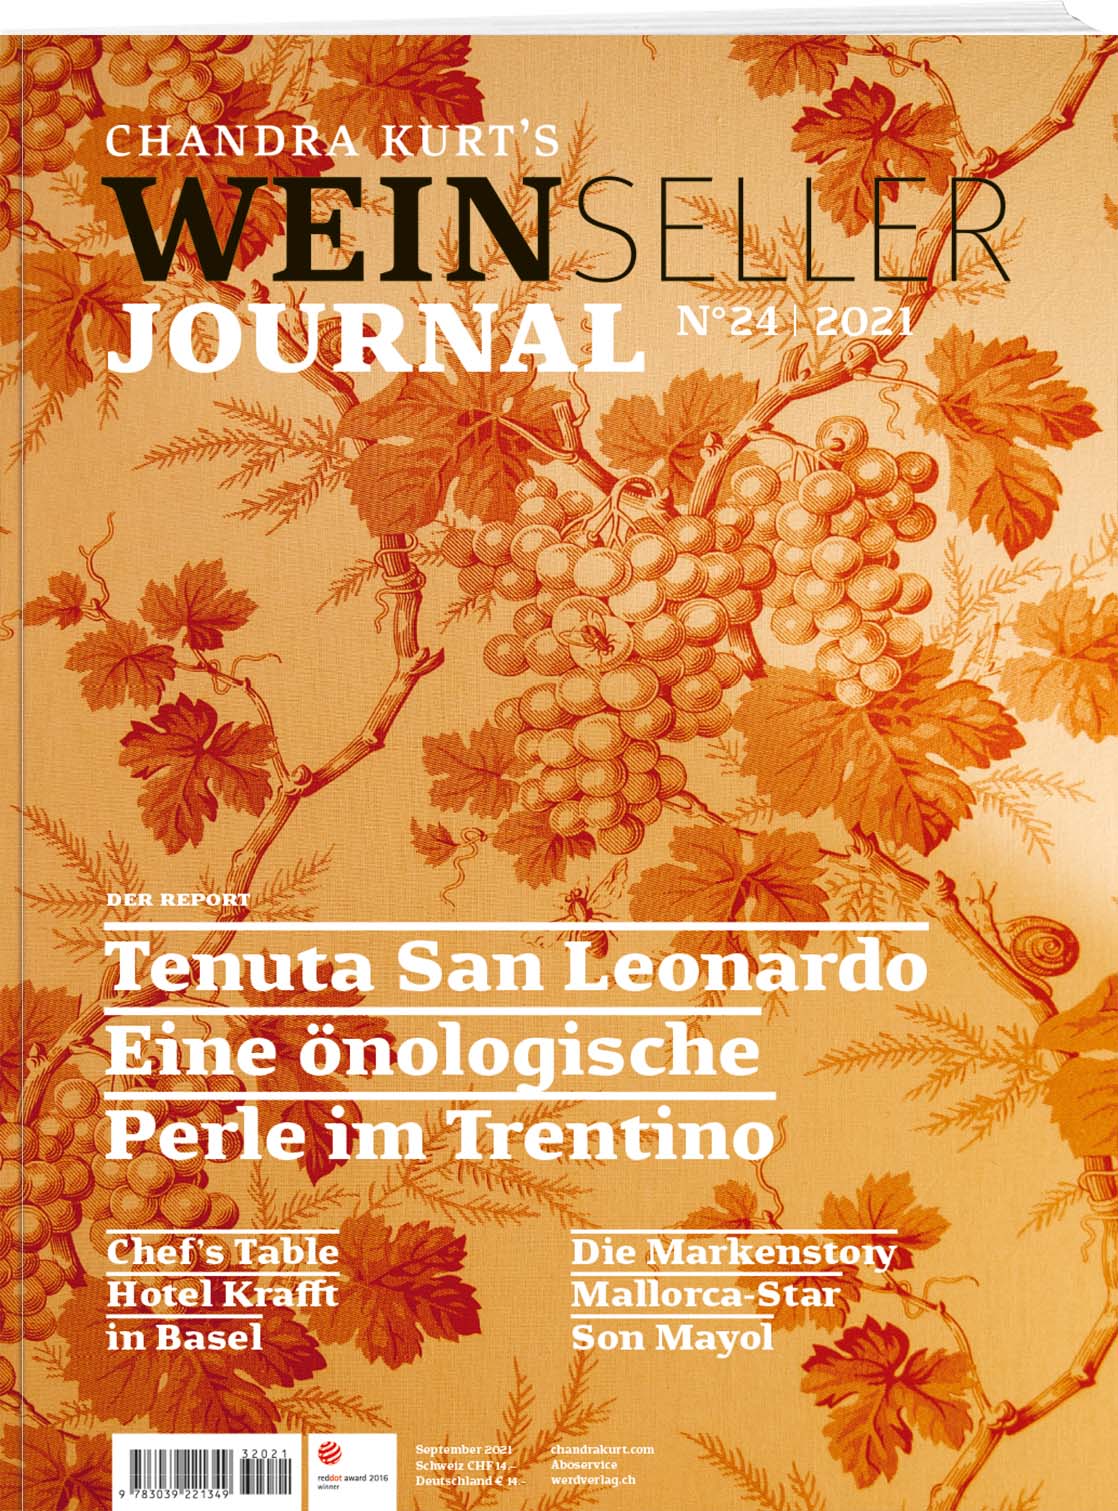 Weinseller Journal 24/22 - WEBER VERLAG